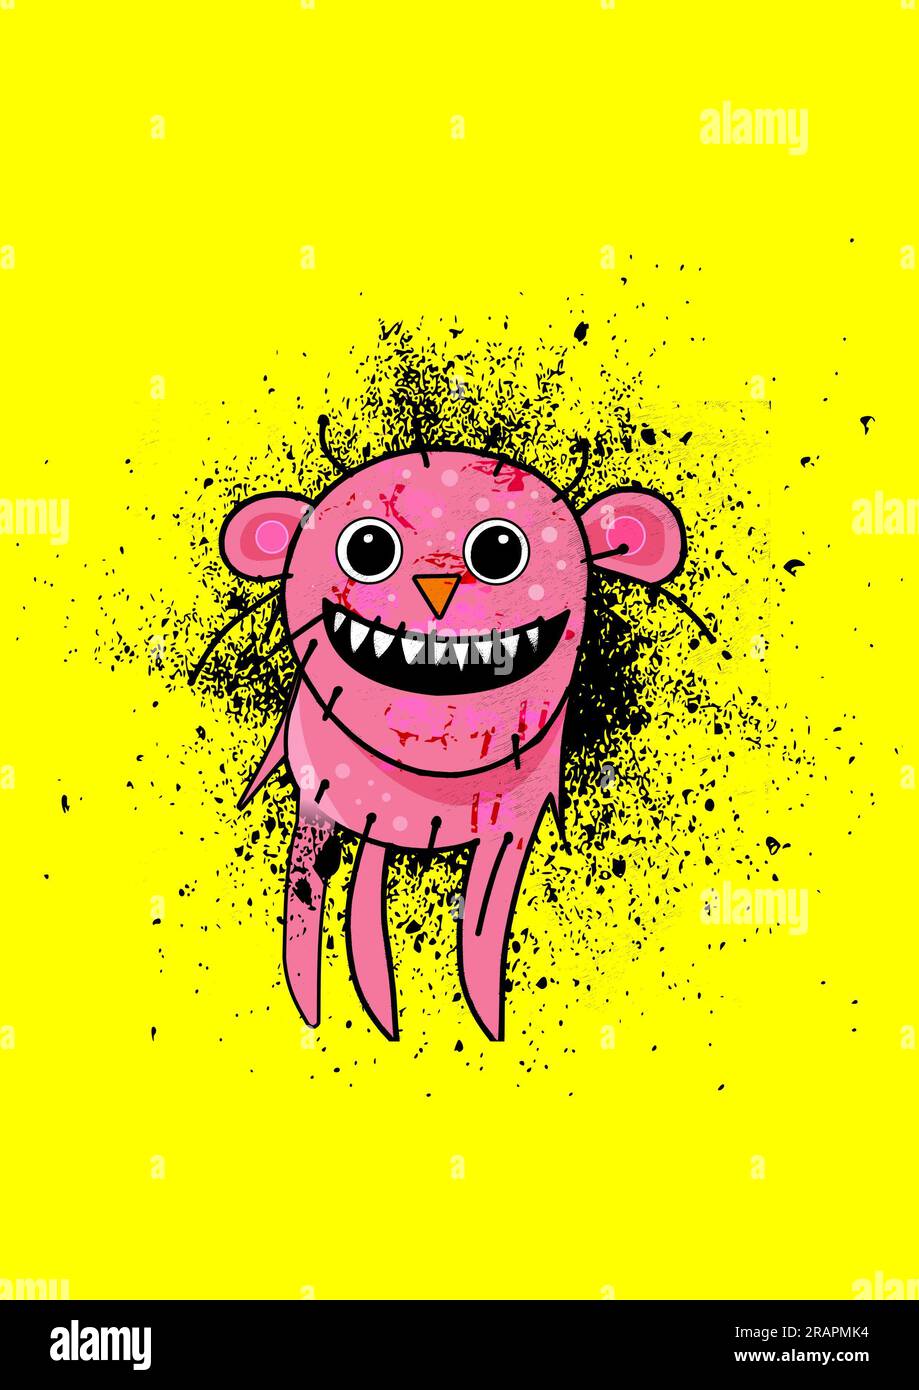 Lustige, freundliche rosa Kreatur/Monster, die laut lacht, mit einem breiten Lächeln auf gelbem Hintergrund Stockfoto